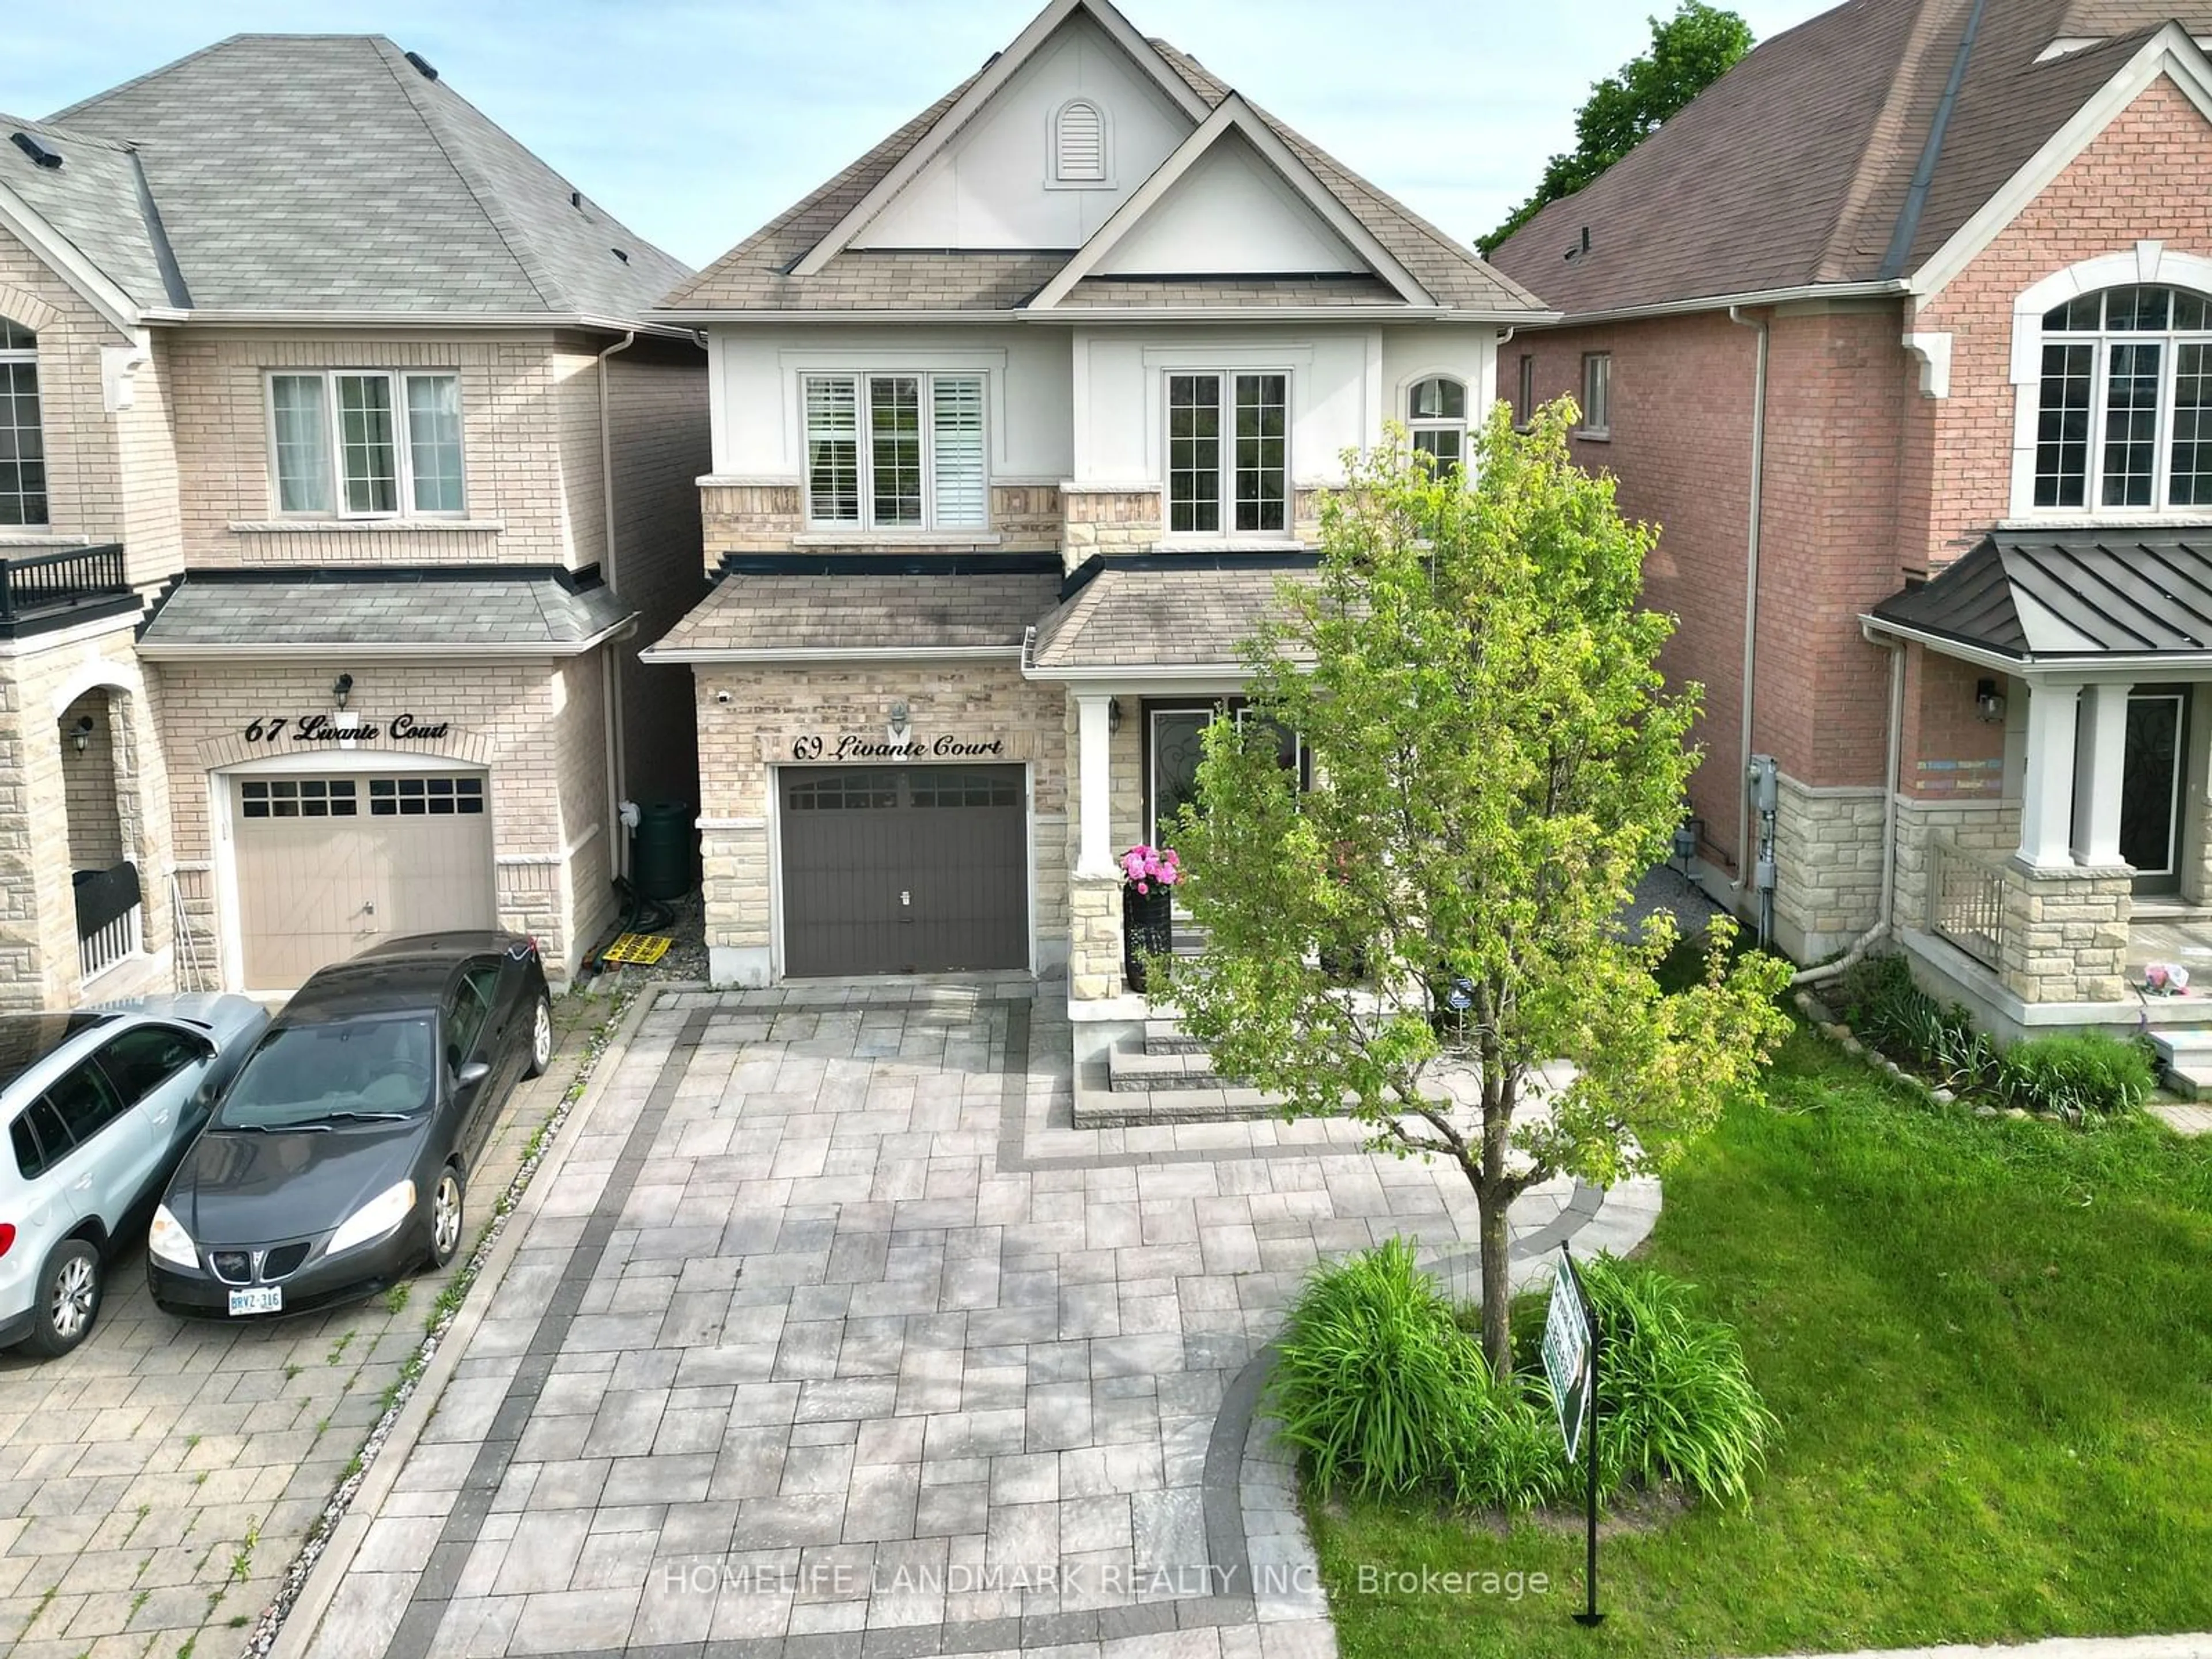 Home with brick exterior material for 69 Livante Crt, Markham Ontario L6C 0T5